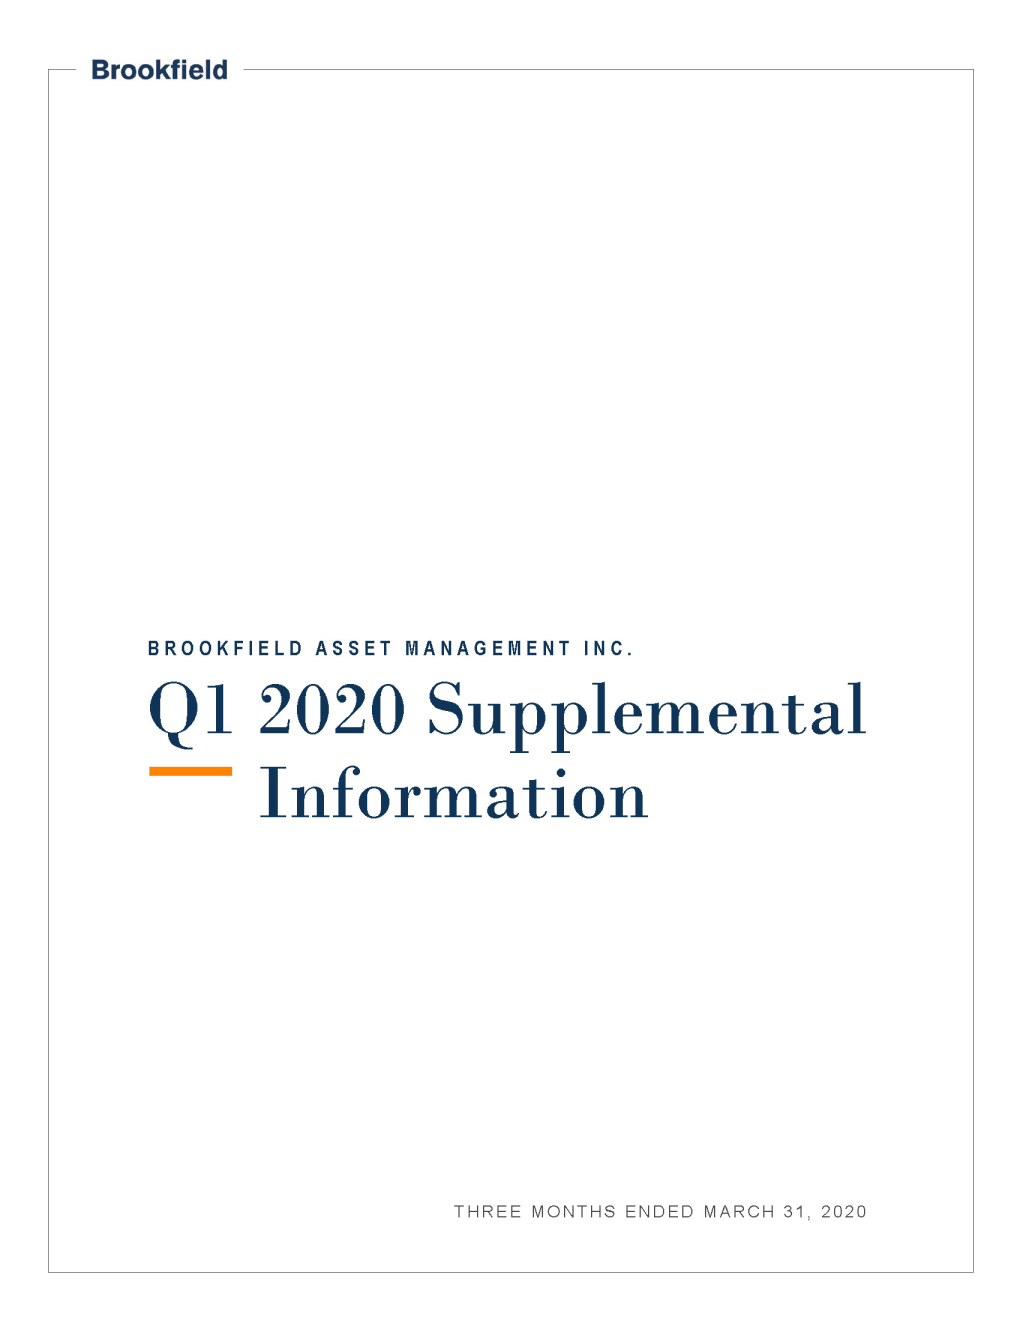 Q1 Supplemental